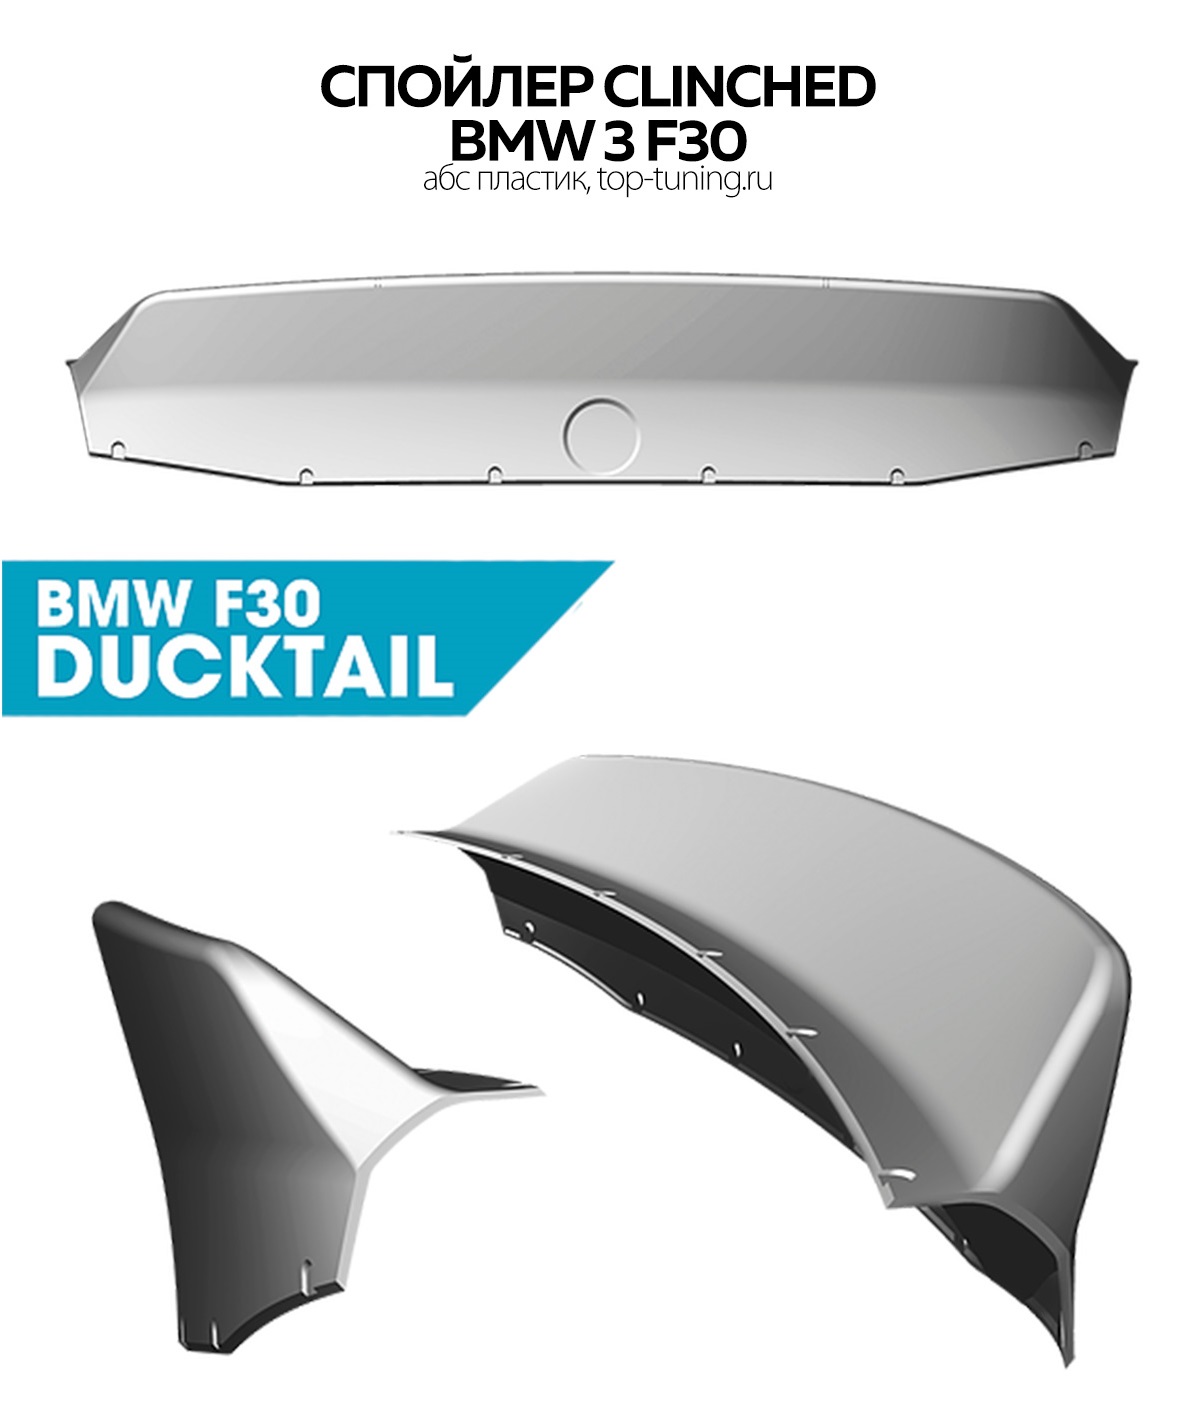 Оригинальный спойлер (Ducktail) Clinched - Тюнинг BMW F30